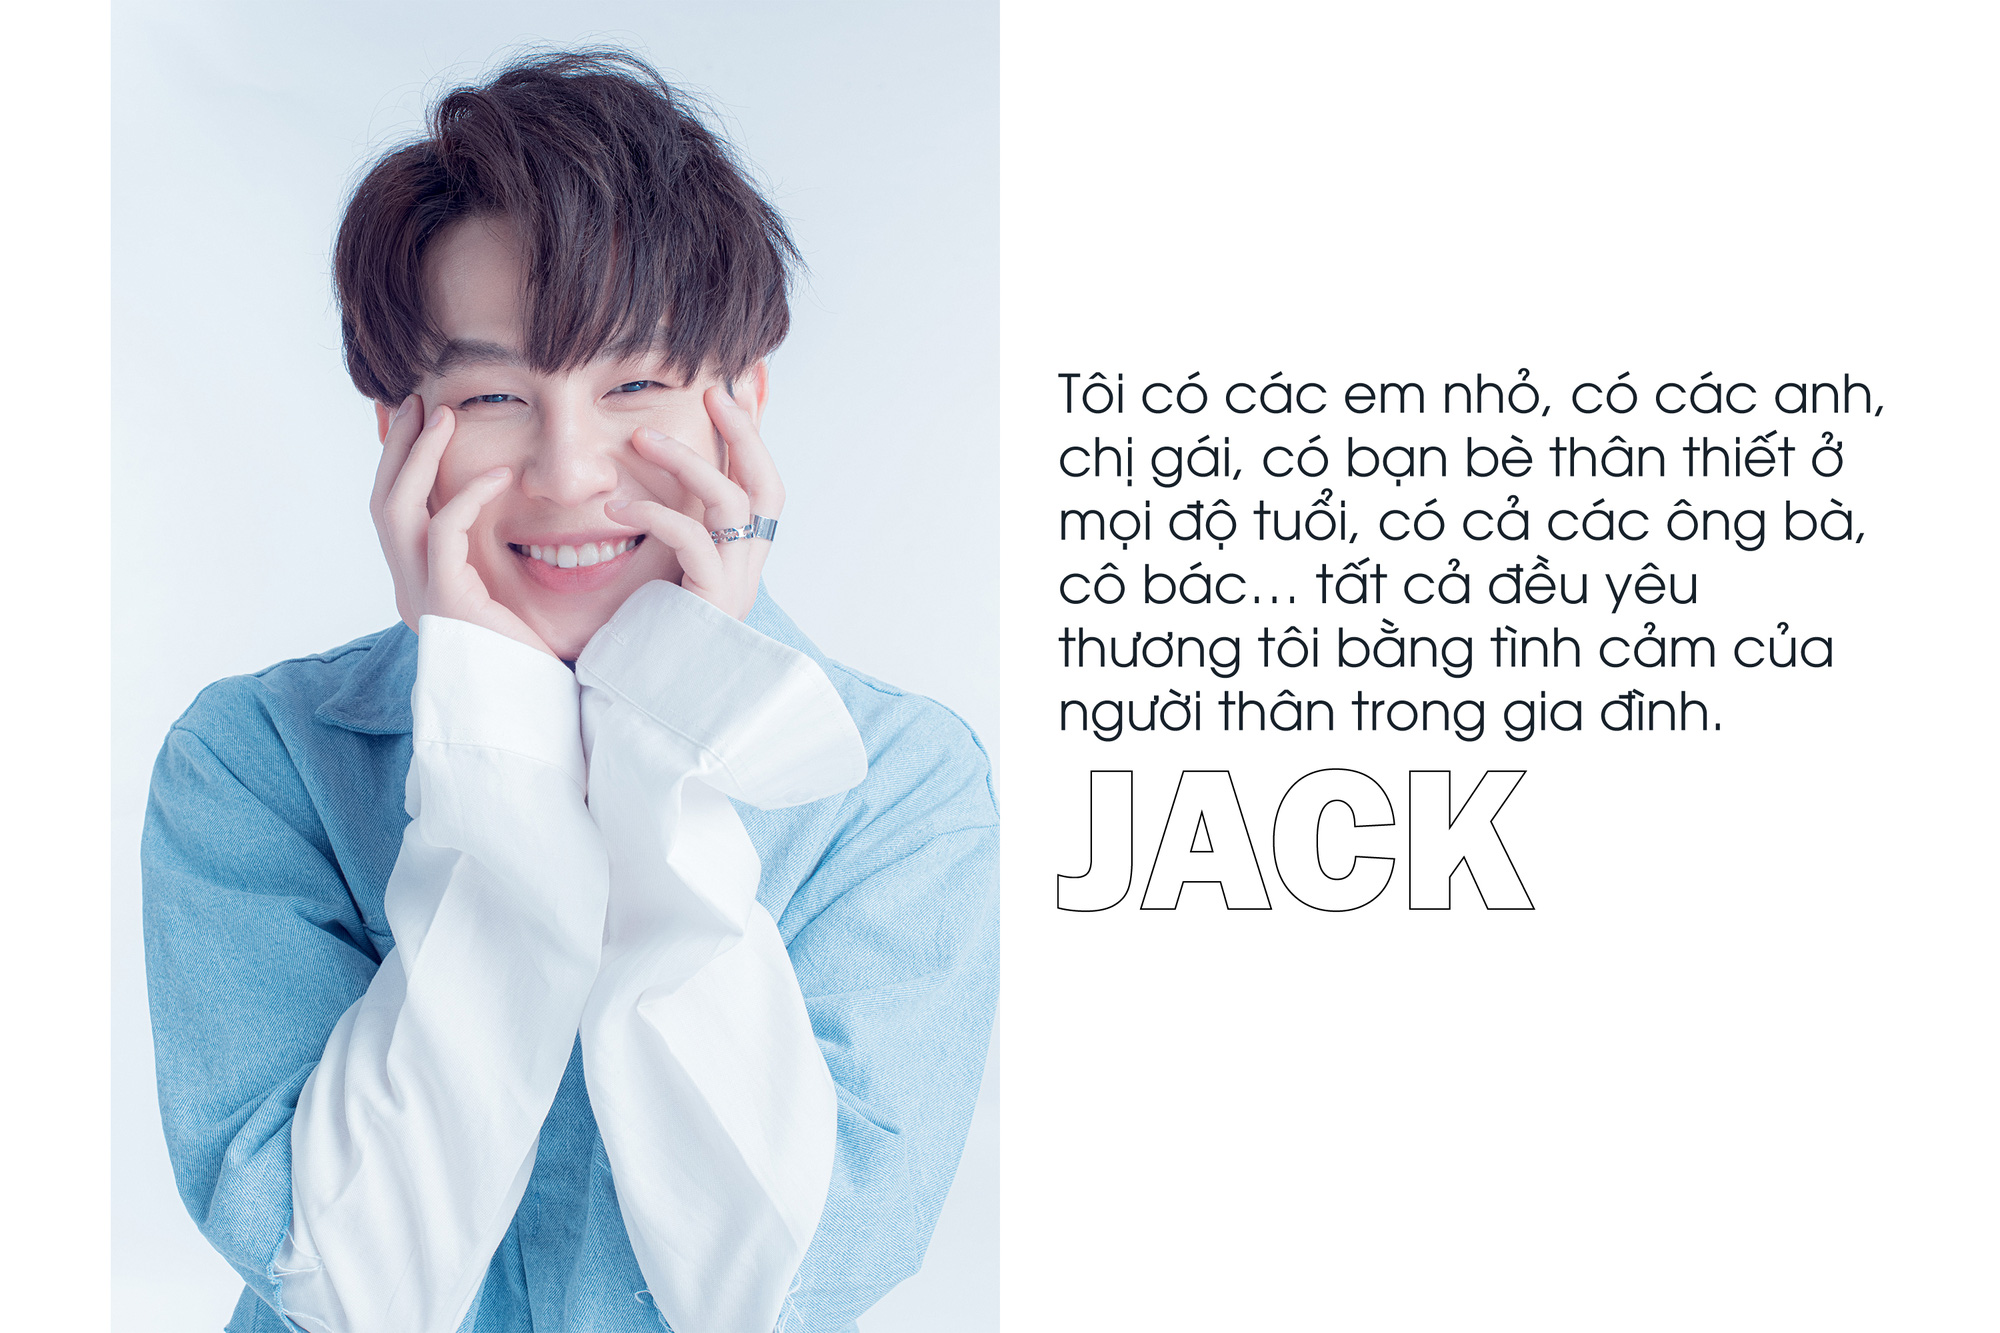 [eMagazine] - Jack: Tôi chỉ thích làm nhạc, còn những cái khác không chú ý lắm - Ảnh 2.